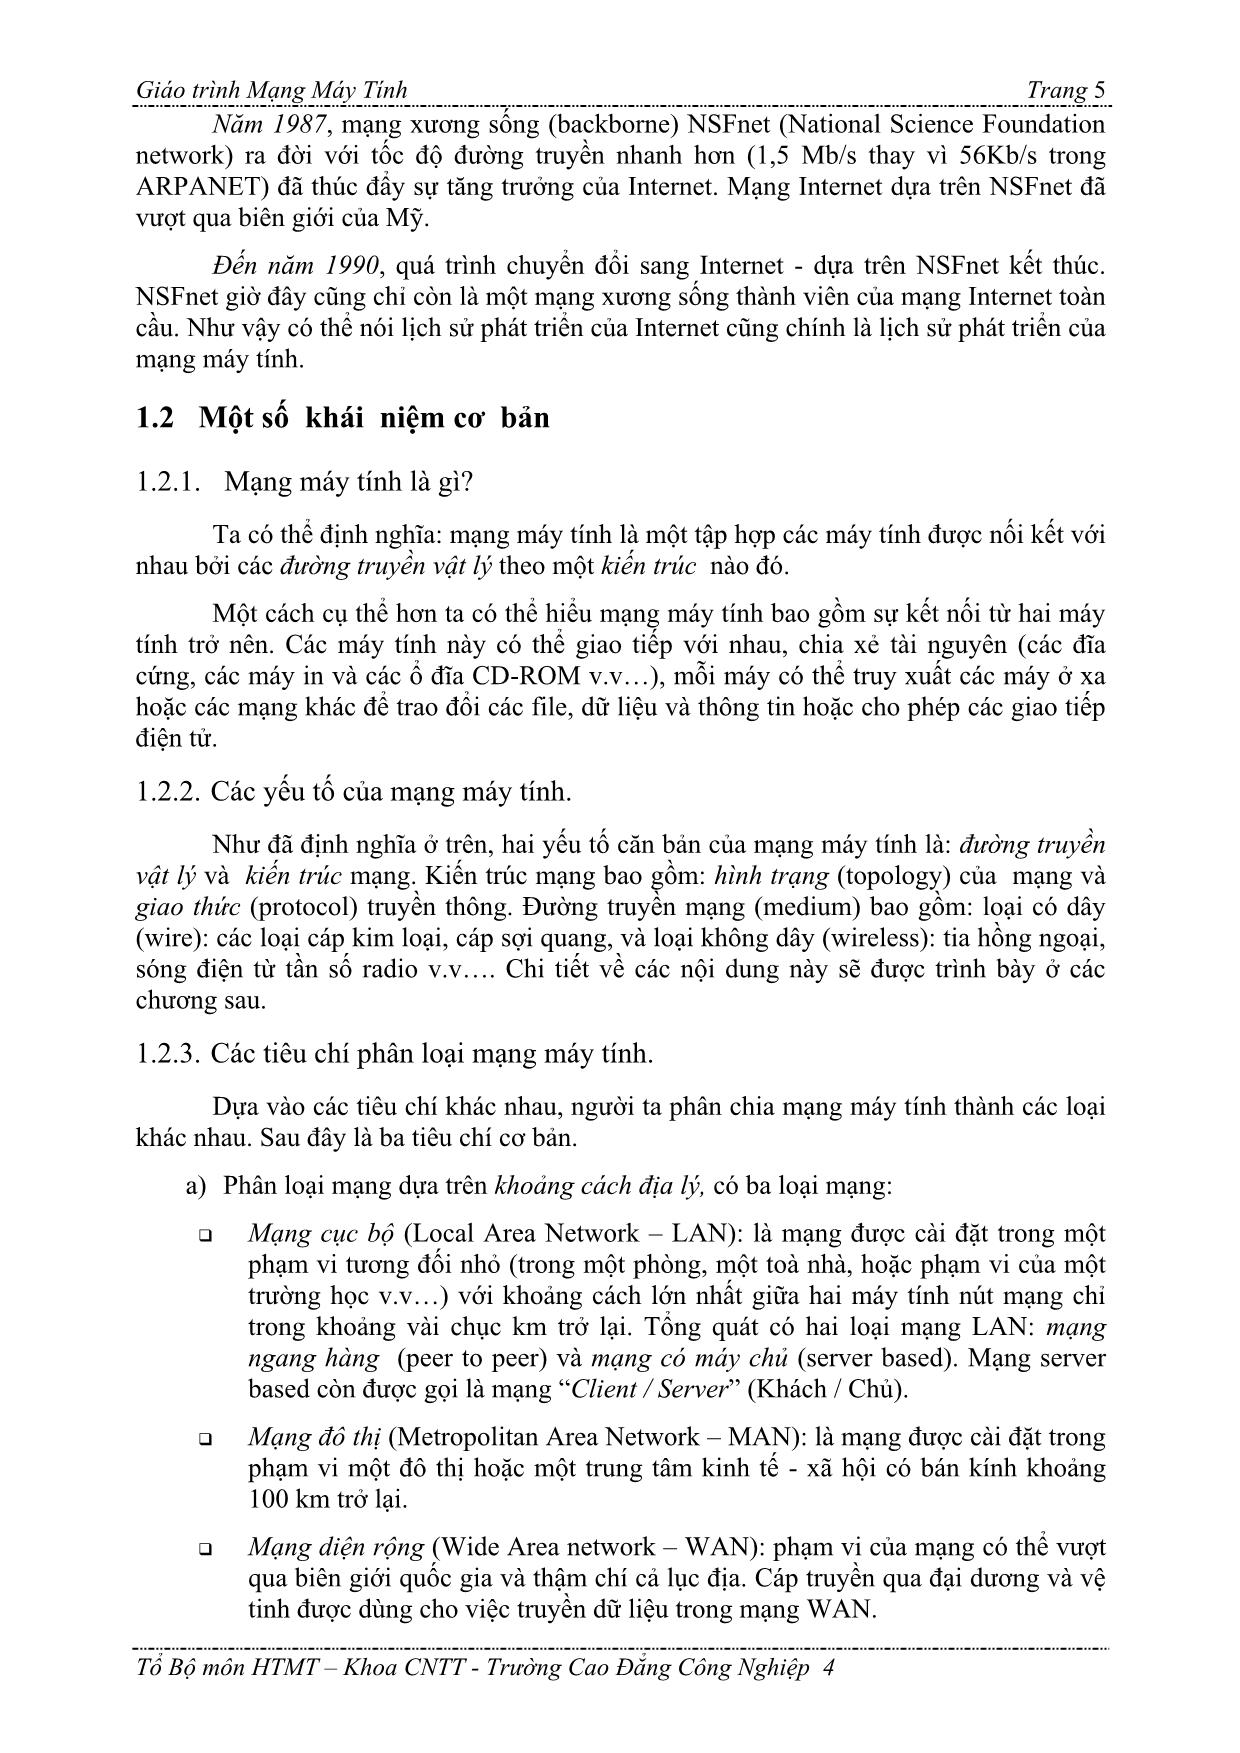 Giáo trình Mạng máy tính (Bản hay) trang 5